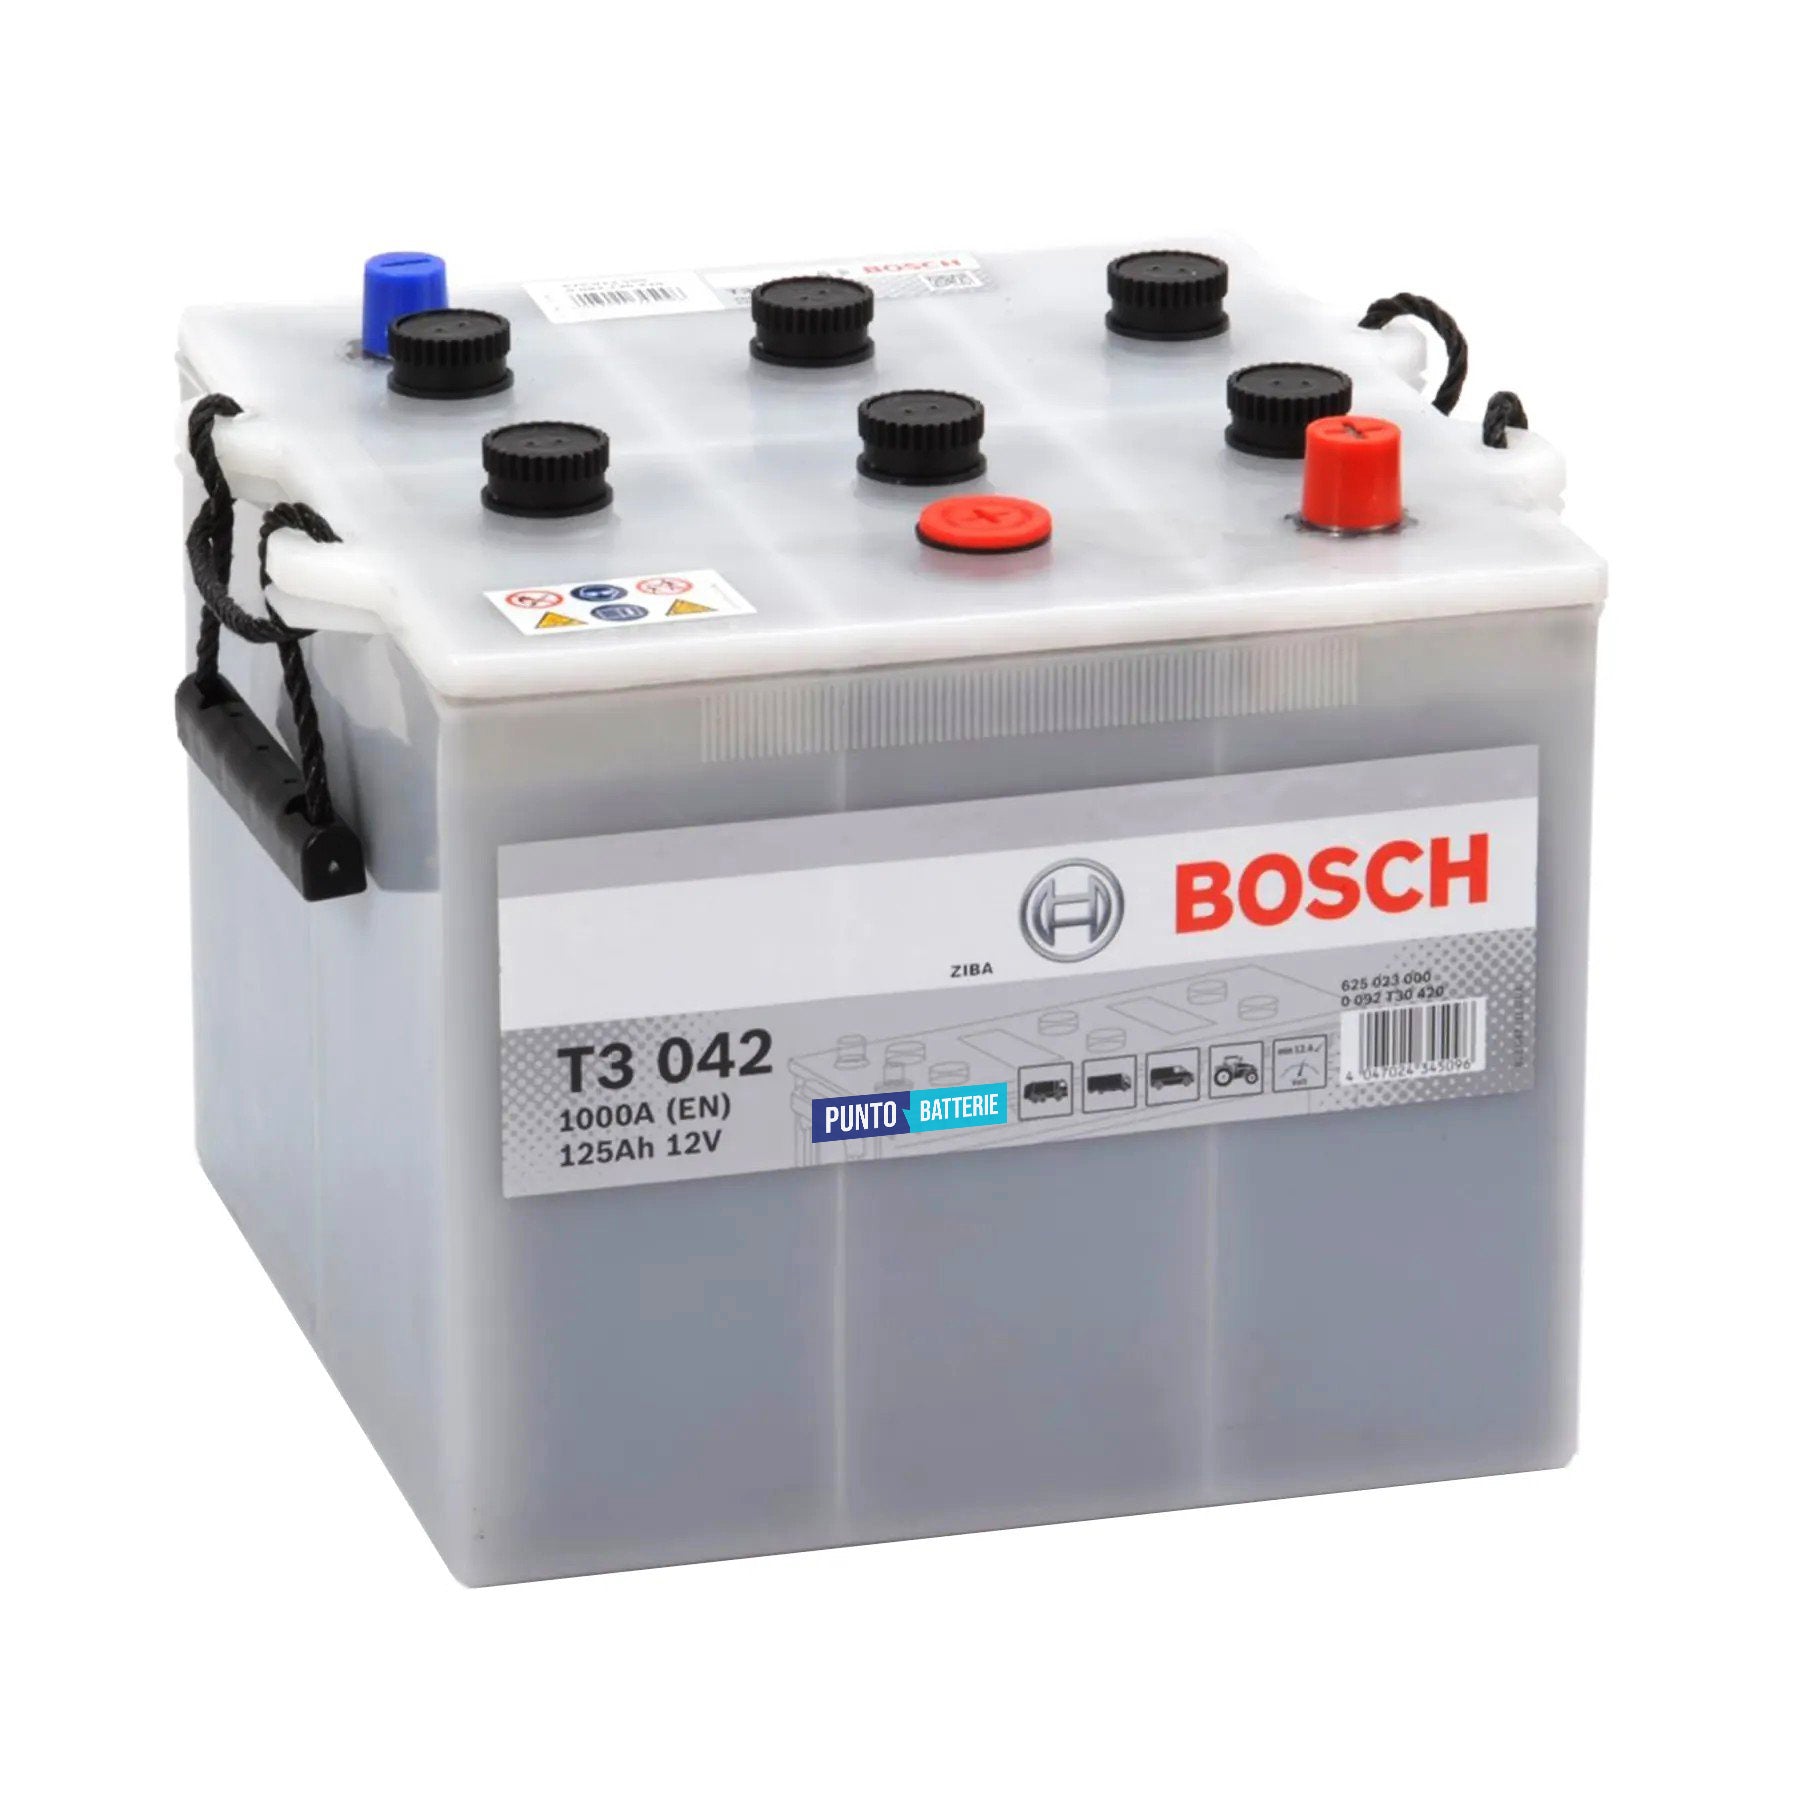 Batteria originale Bosch T3 T3042, dimensioni 284 x 269 x 230, polo positivo a destra, 12 volt, 125 amperora, 1000 ampere. Batteria per camion e veicoli pesanti.